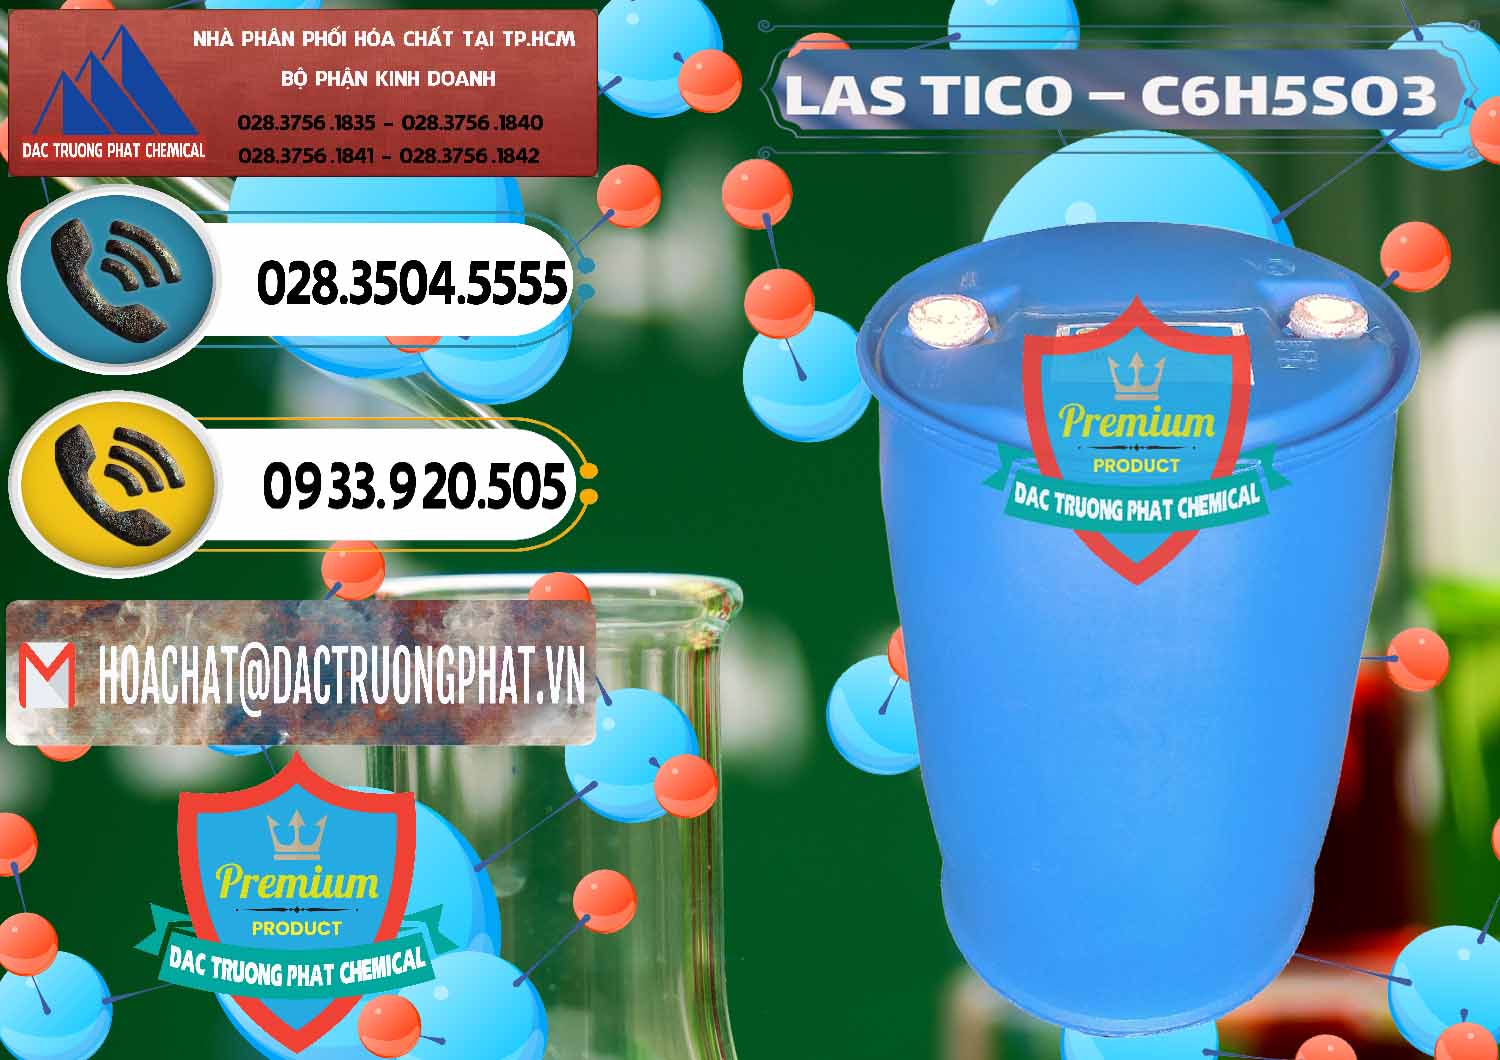 Cty chuyên bán ( cung cấp ) Chất tạo bọt Las H Tico Việt Nam - 0190 - Chuyên cung cấp - bán hóa chất tại TP.HCM - hoachatdetnhuom.vn